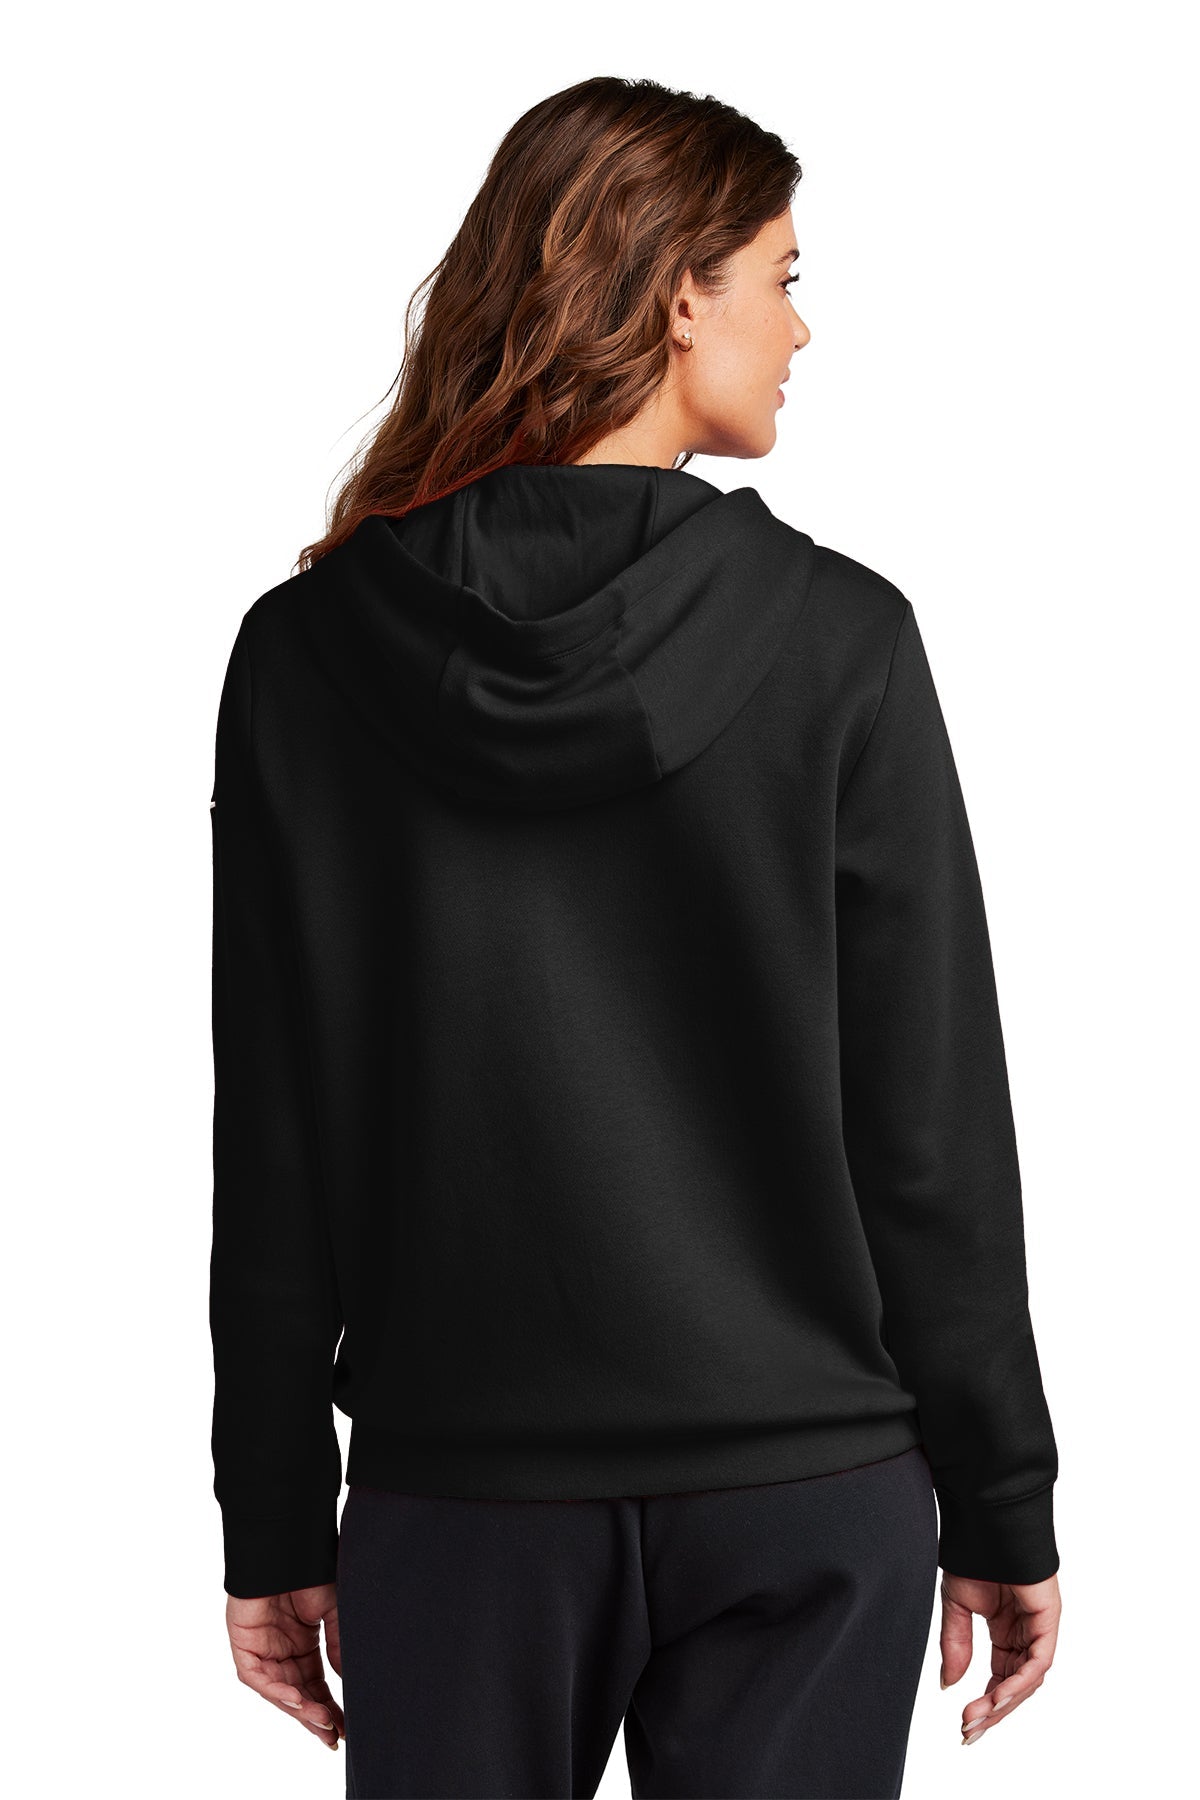 Nike Ladies Club Fleece Full-Zip Custom Hoodies, Black